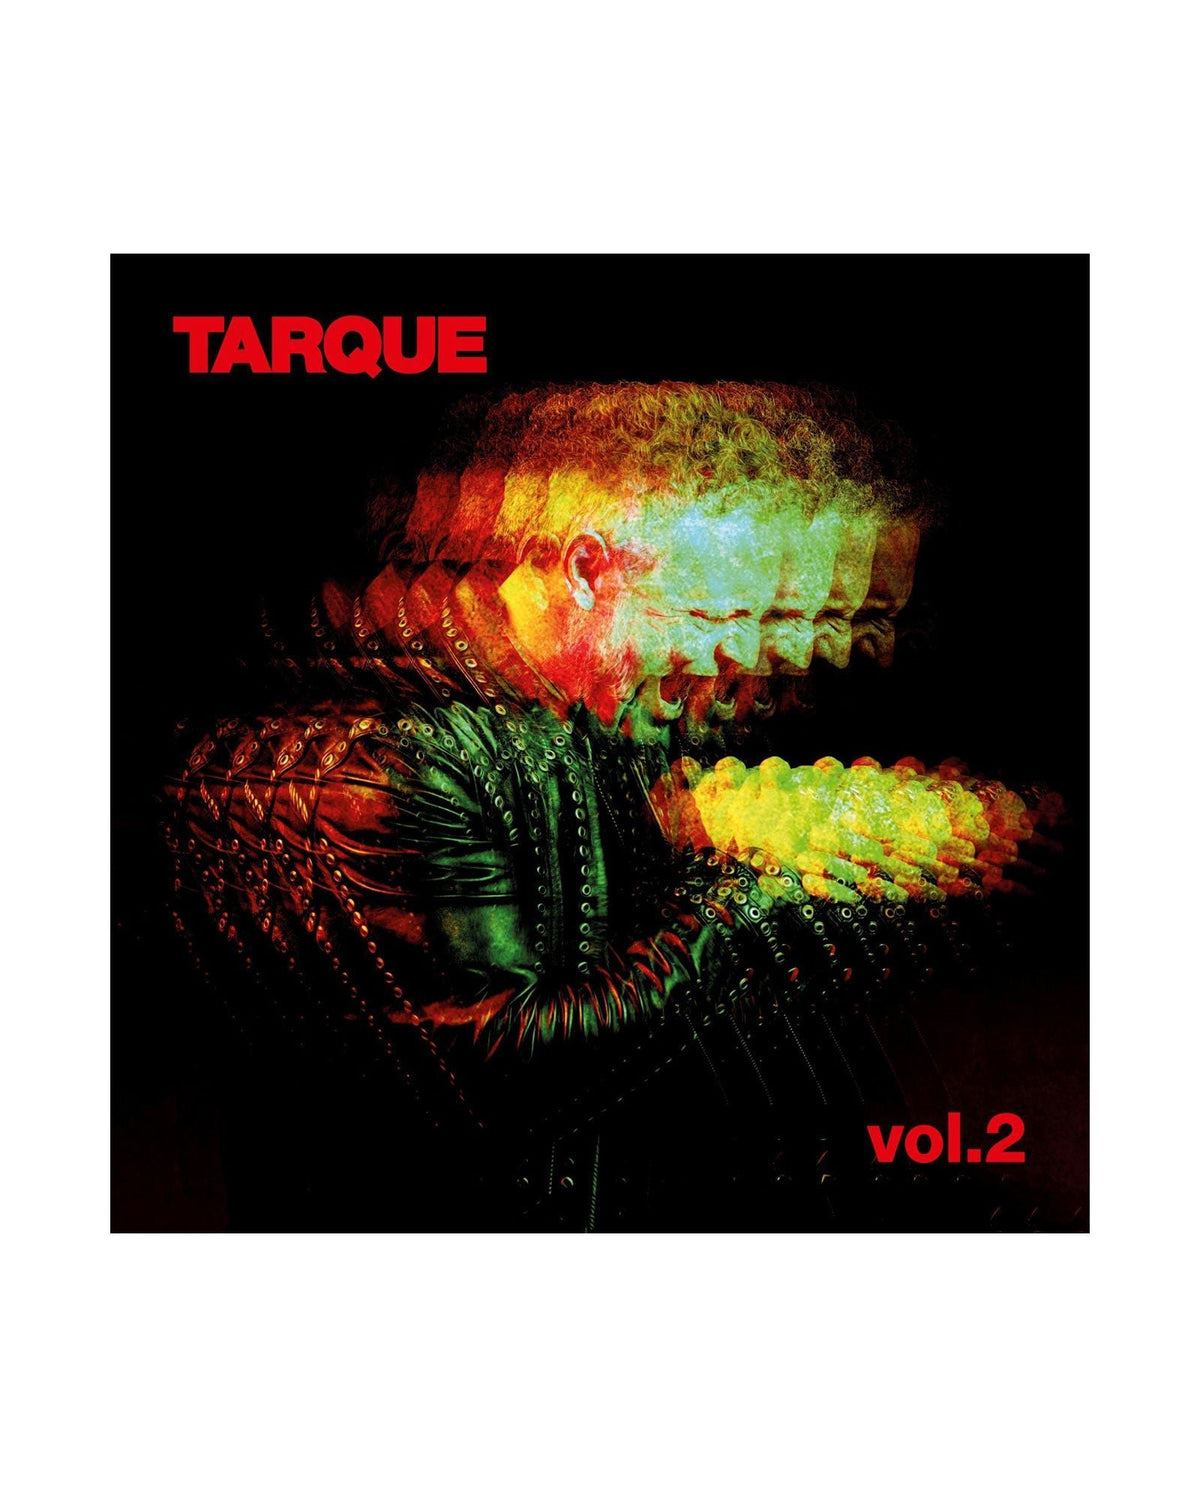 Tarque - LP Vinilo "Vol. 2" + Postal Firmada - D2fy · Rocktud - Tarque